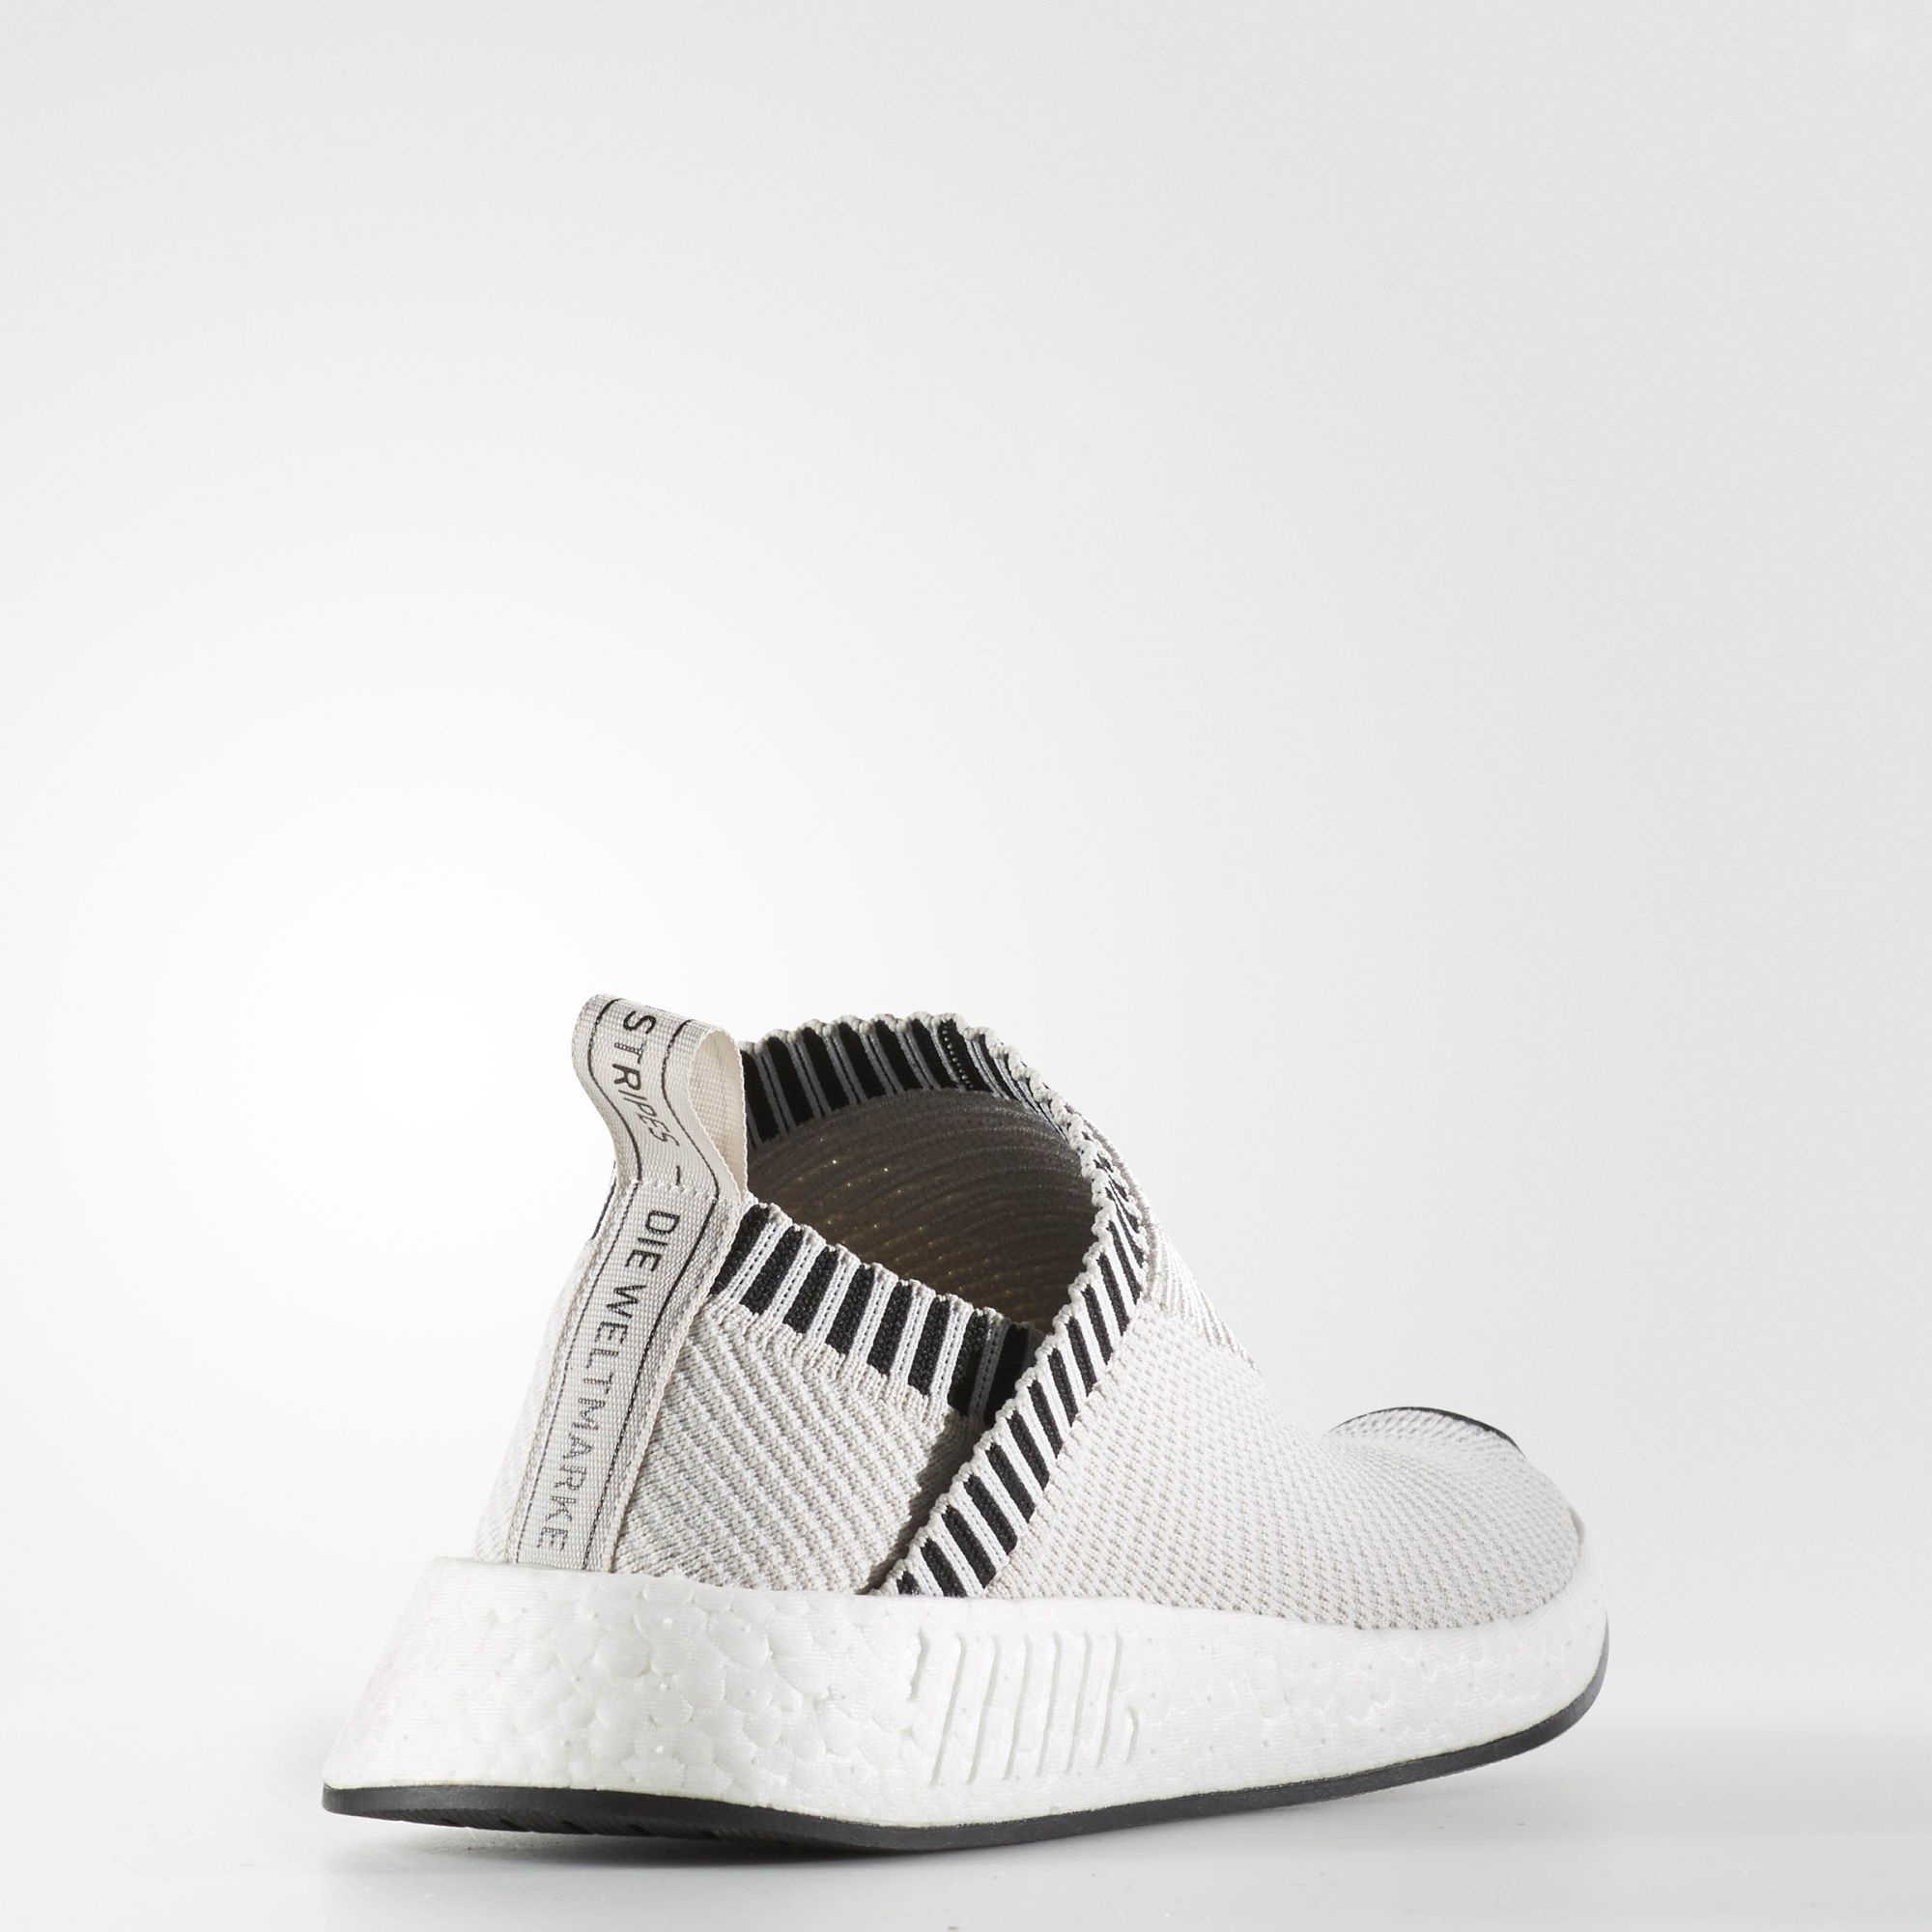 Adidas W NMD_CS2 Primeknit
Pearl Grey / Footwear White